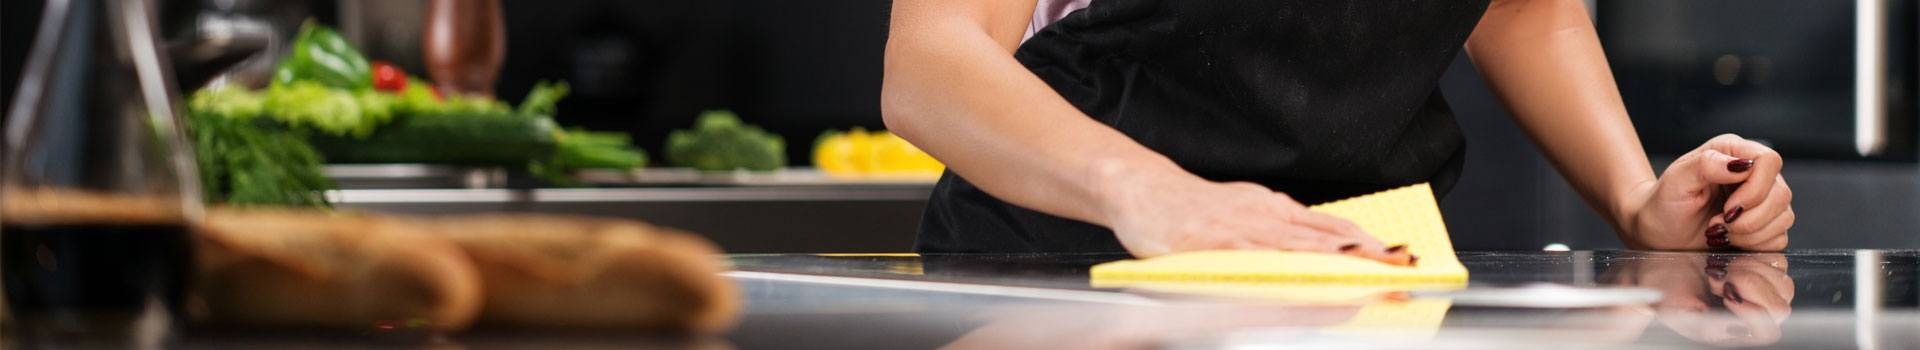 Reinigings-, onderhouds- en gebruiksinstructies voor uw keuken